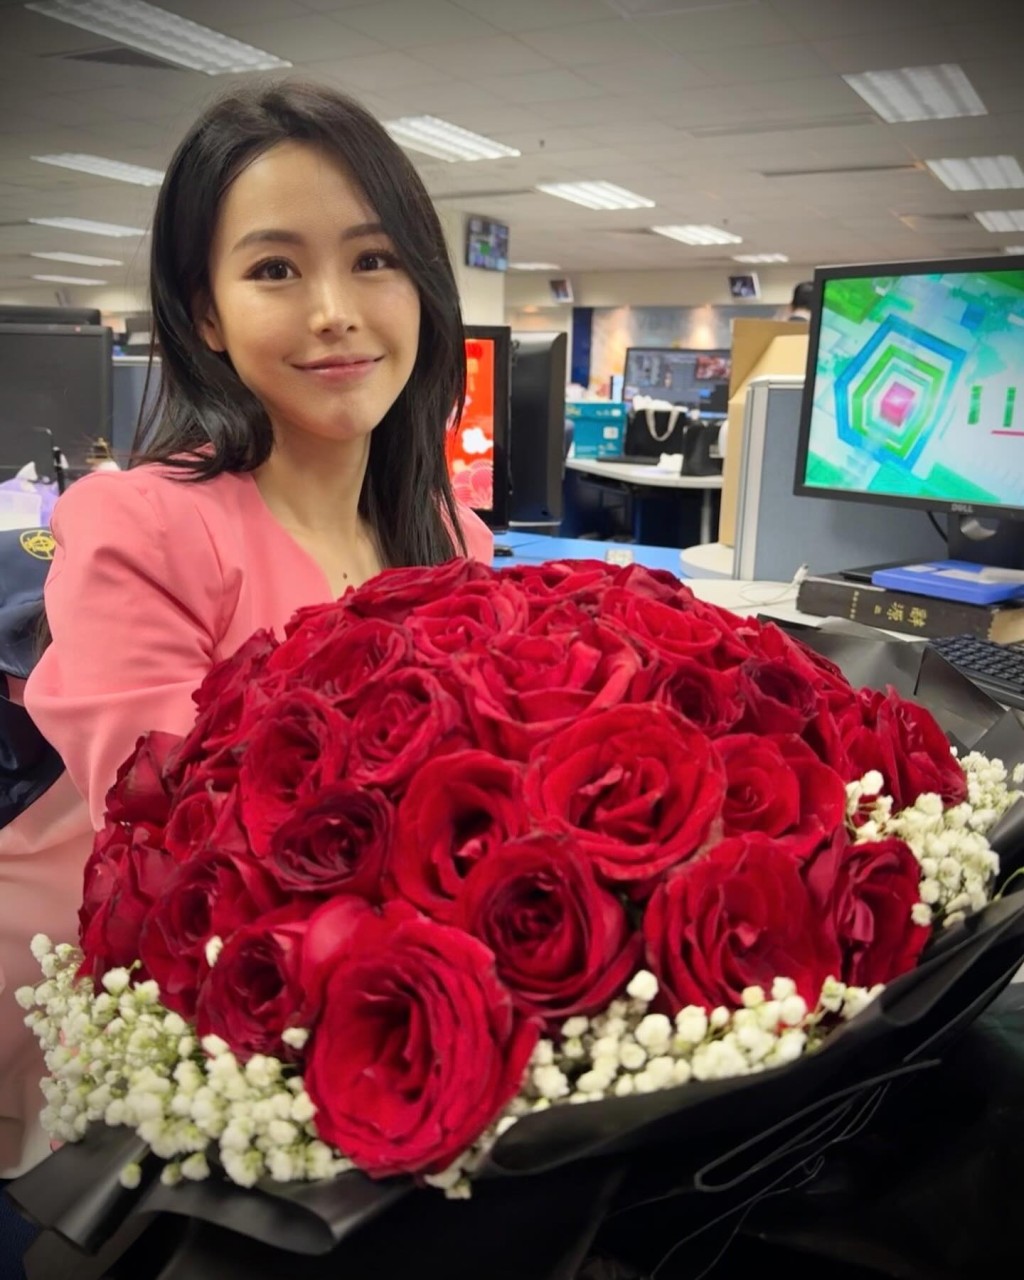 林婷婷在办公室与99枝玫瑰打卡。